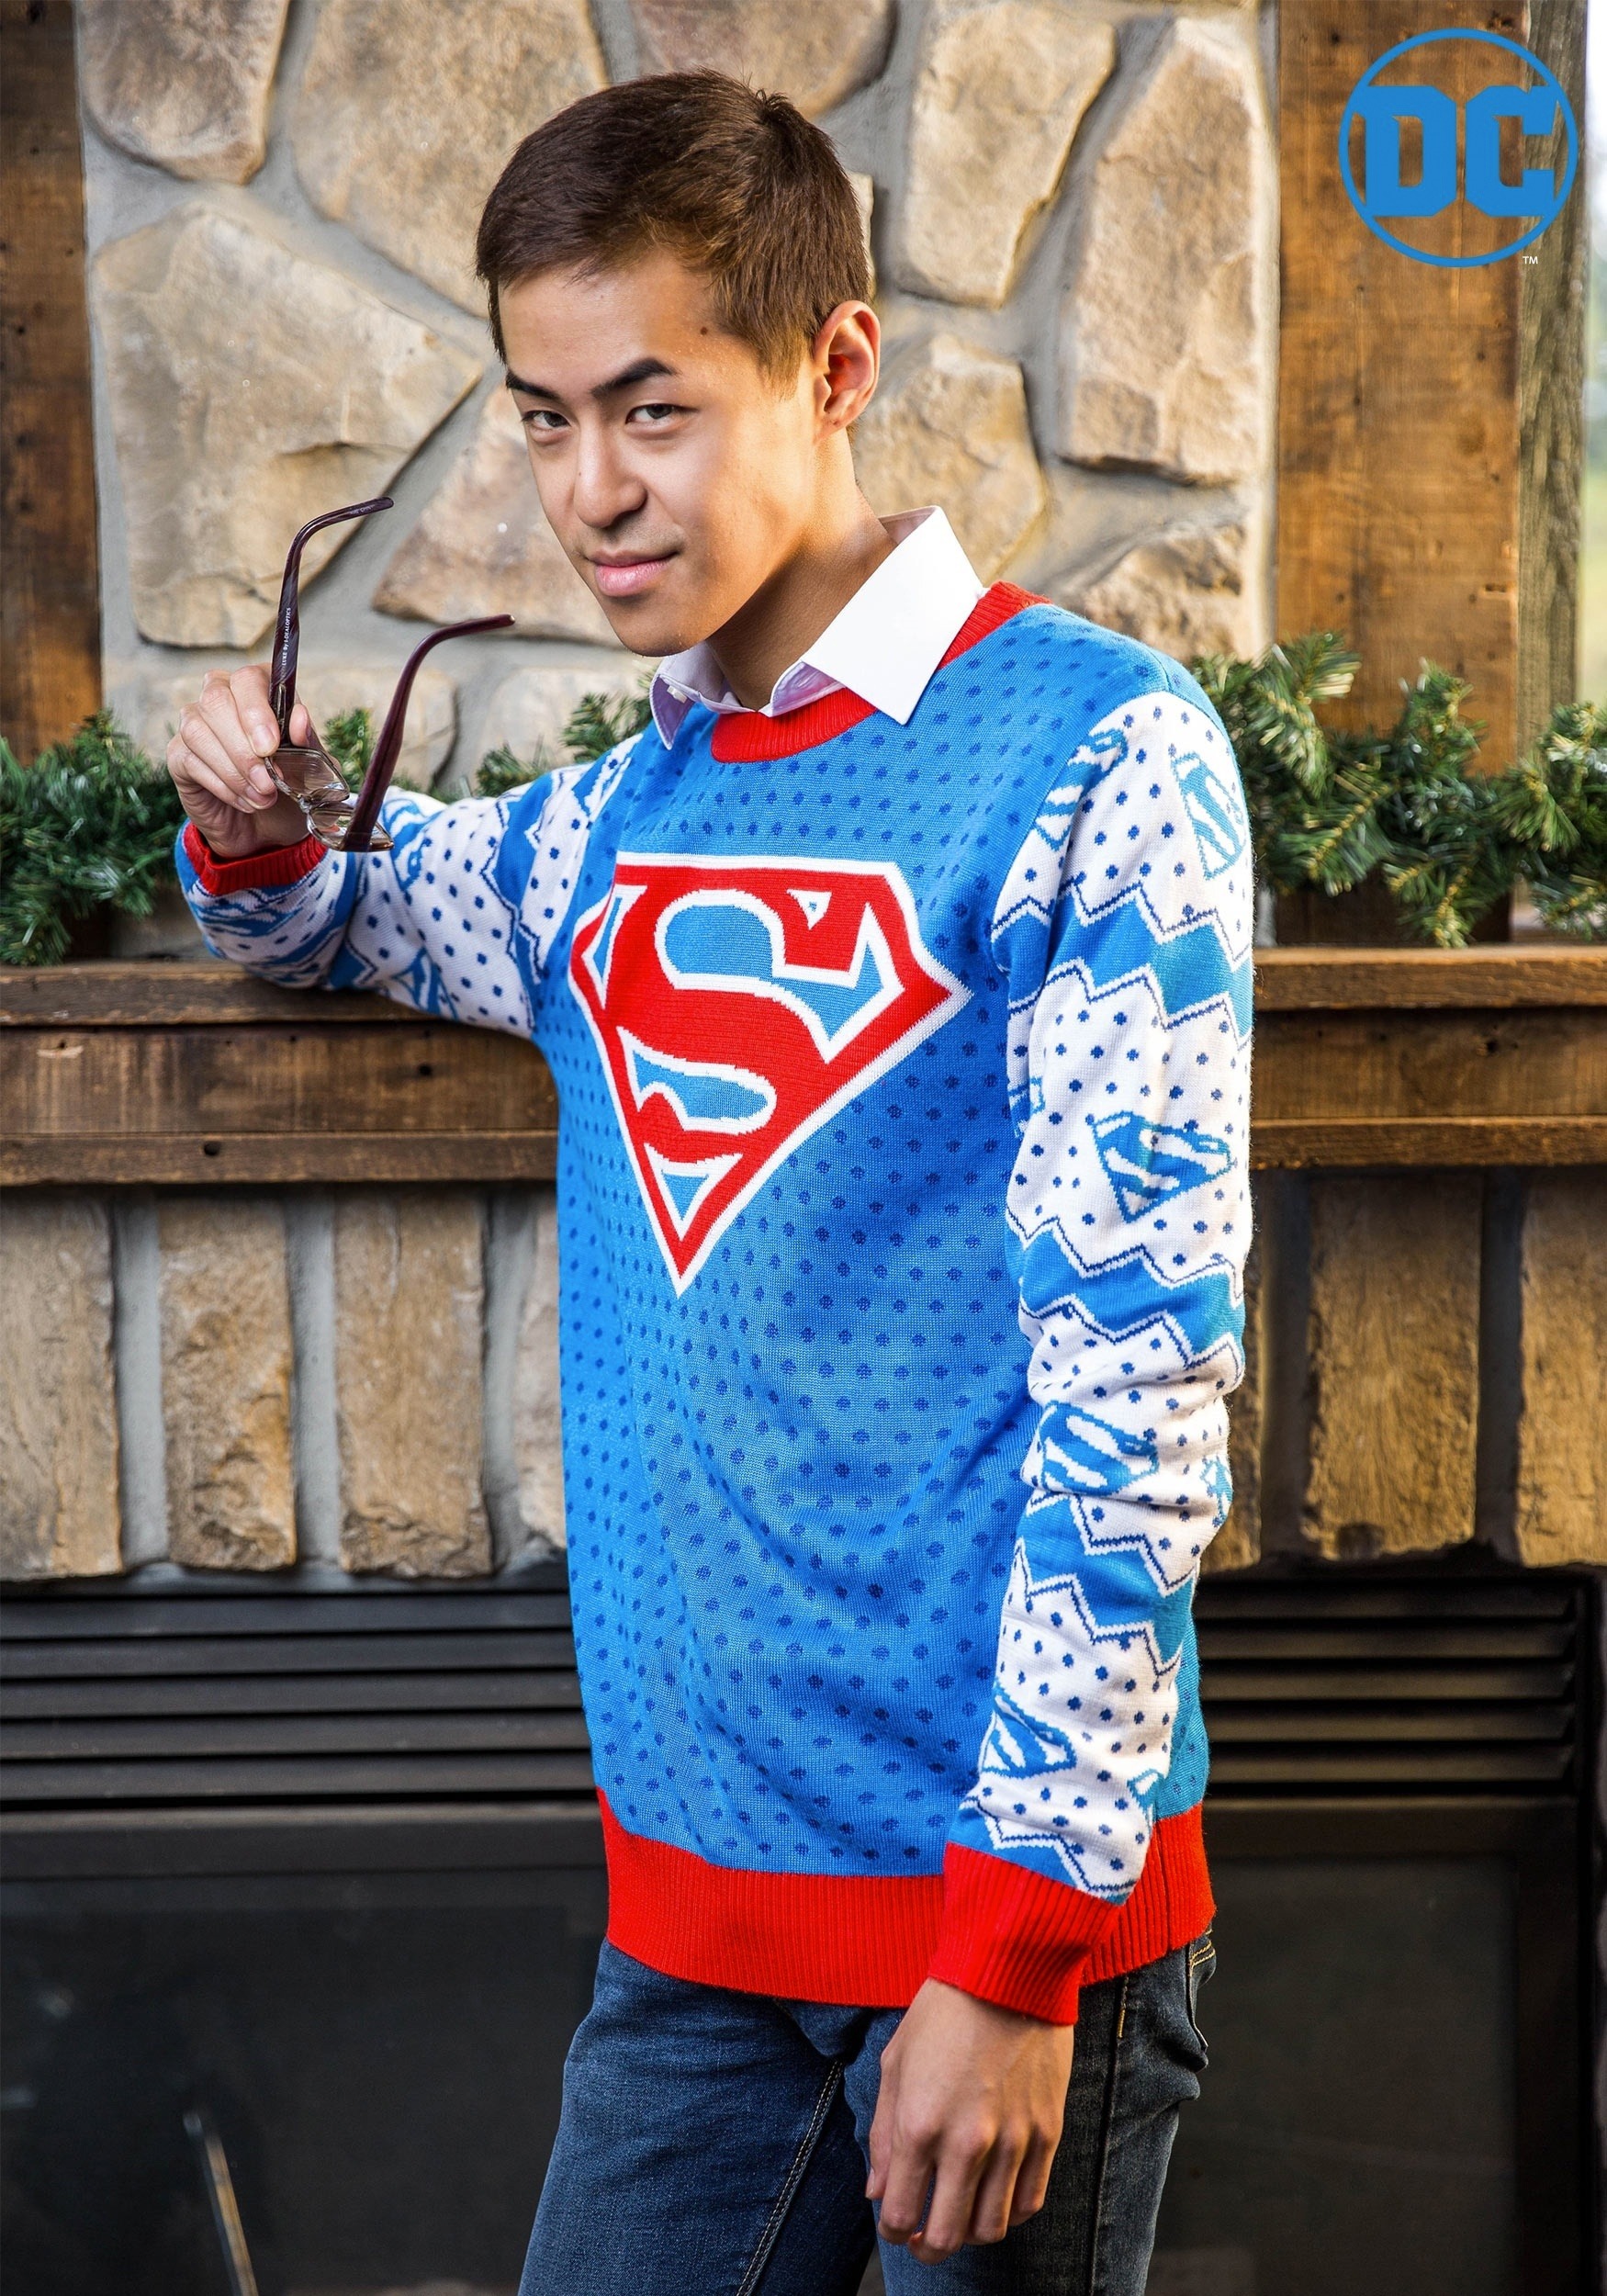 superman xmas sweater